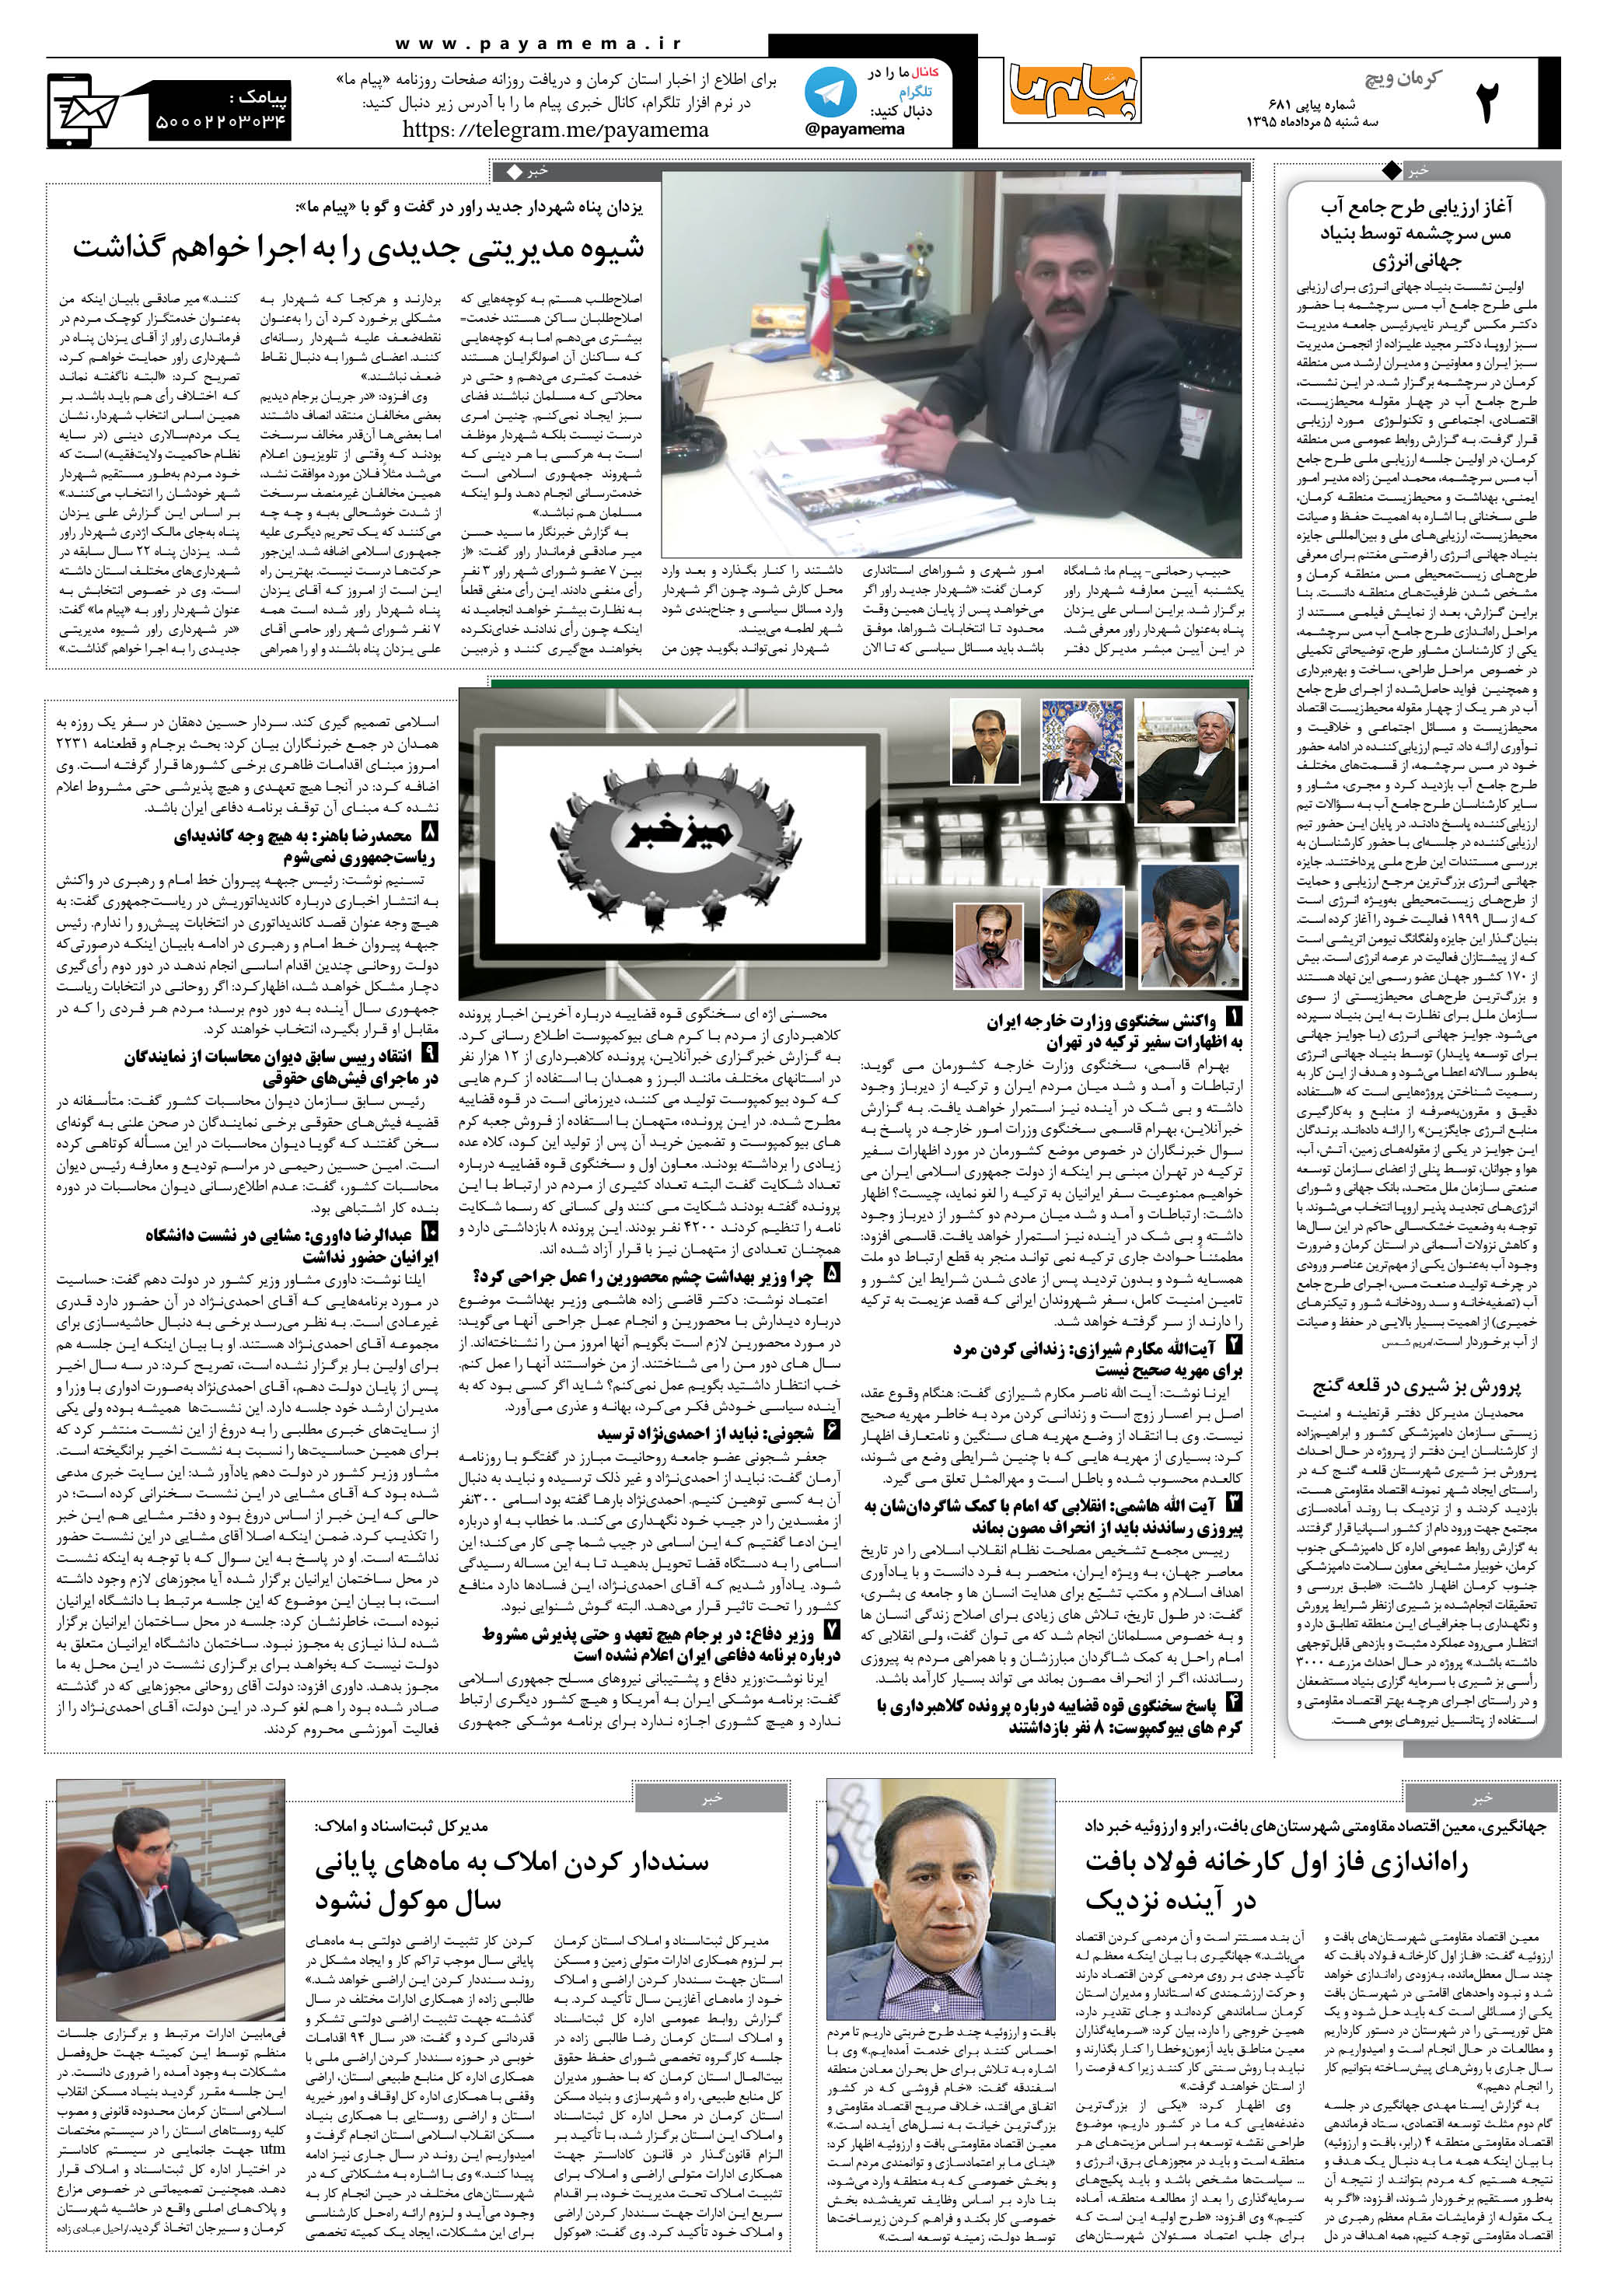 صفحه کرمان ویج شماره 681 روزنامه پیام ما